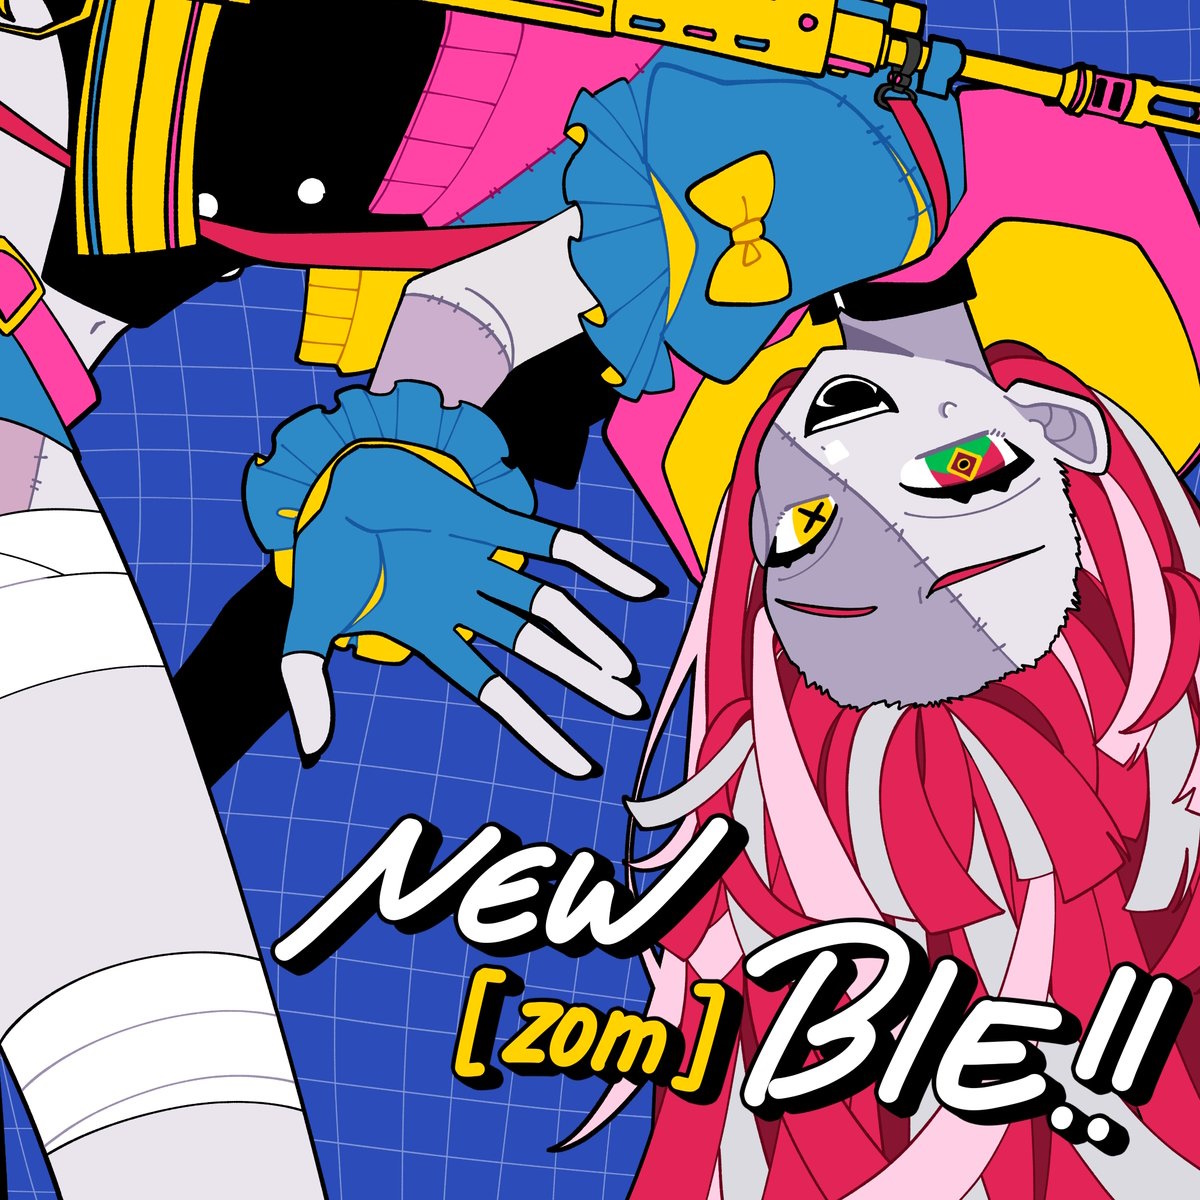 Cover art for『Kureiji Ollie - NEW[zom]BIE!!』from the release『NEW[zom]BIE!!